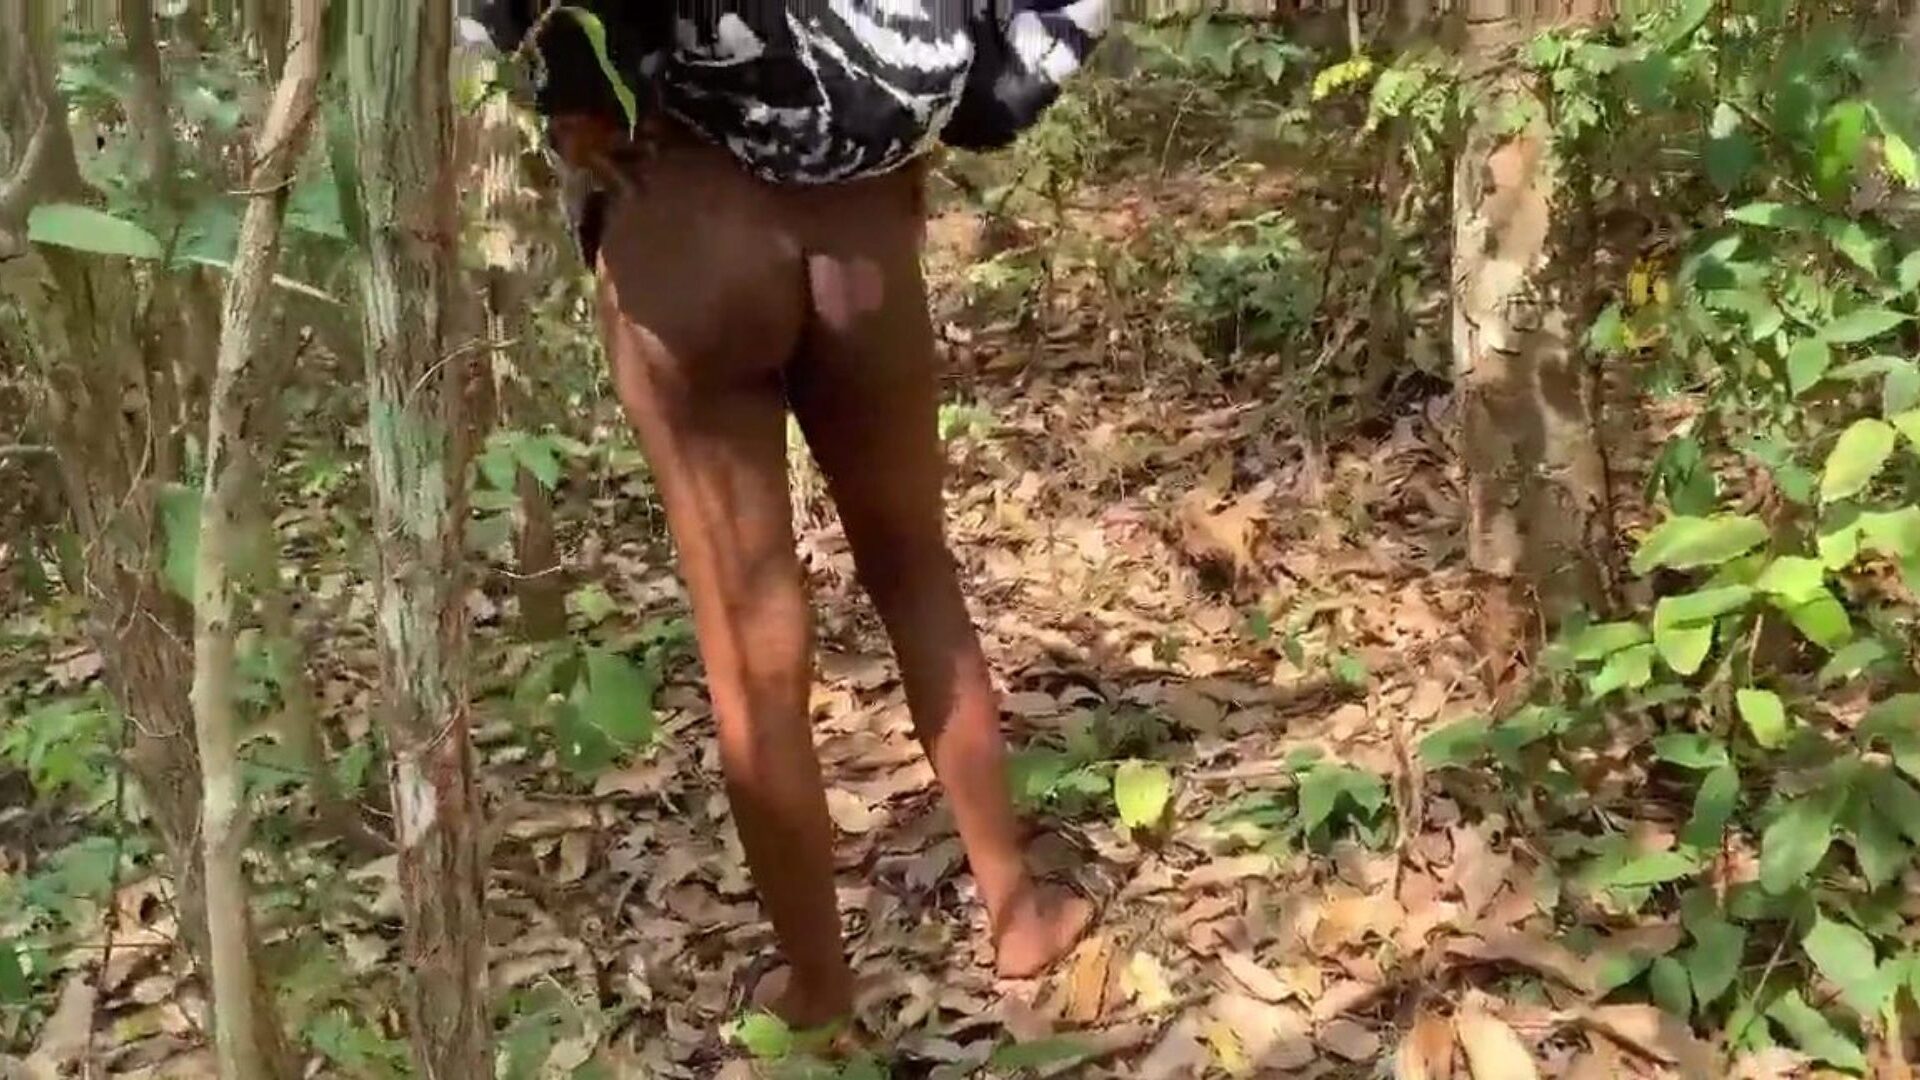 universitetslektor knullar sin student i busken för att ge hennes godkännande i sina tentor